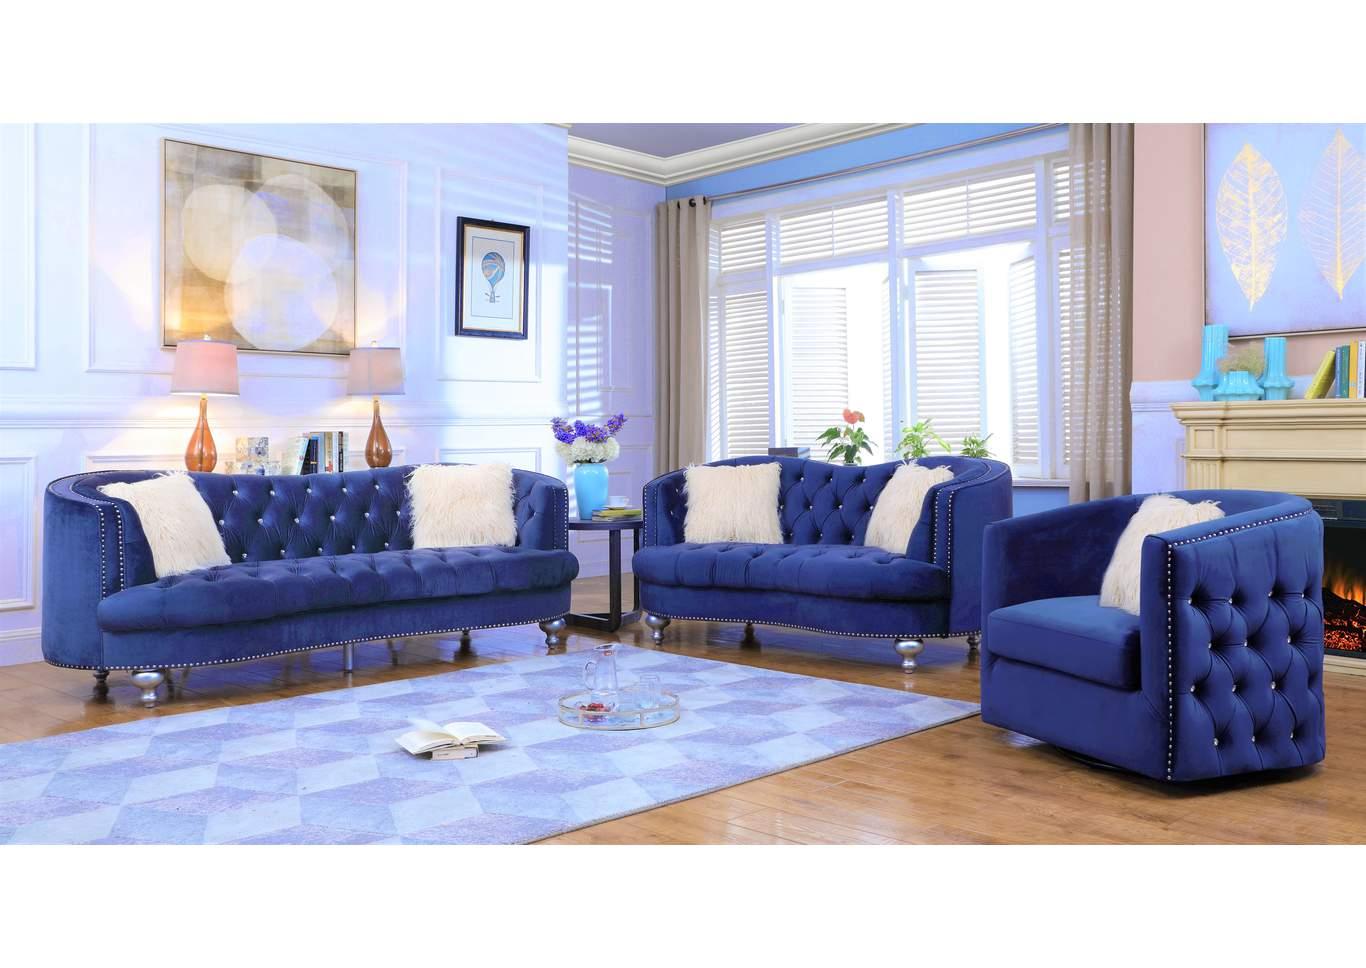 Contemporary, Modern Sofa Set AFREEN GHF-808857892751-Set-3 in Navy blue Velvet